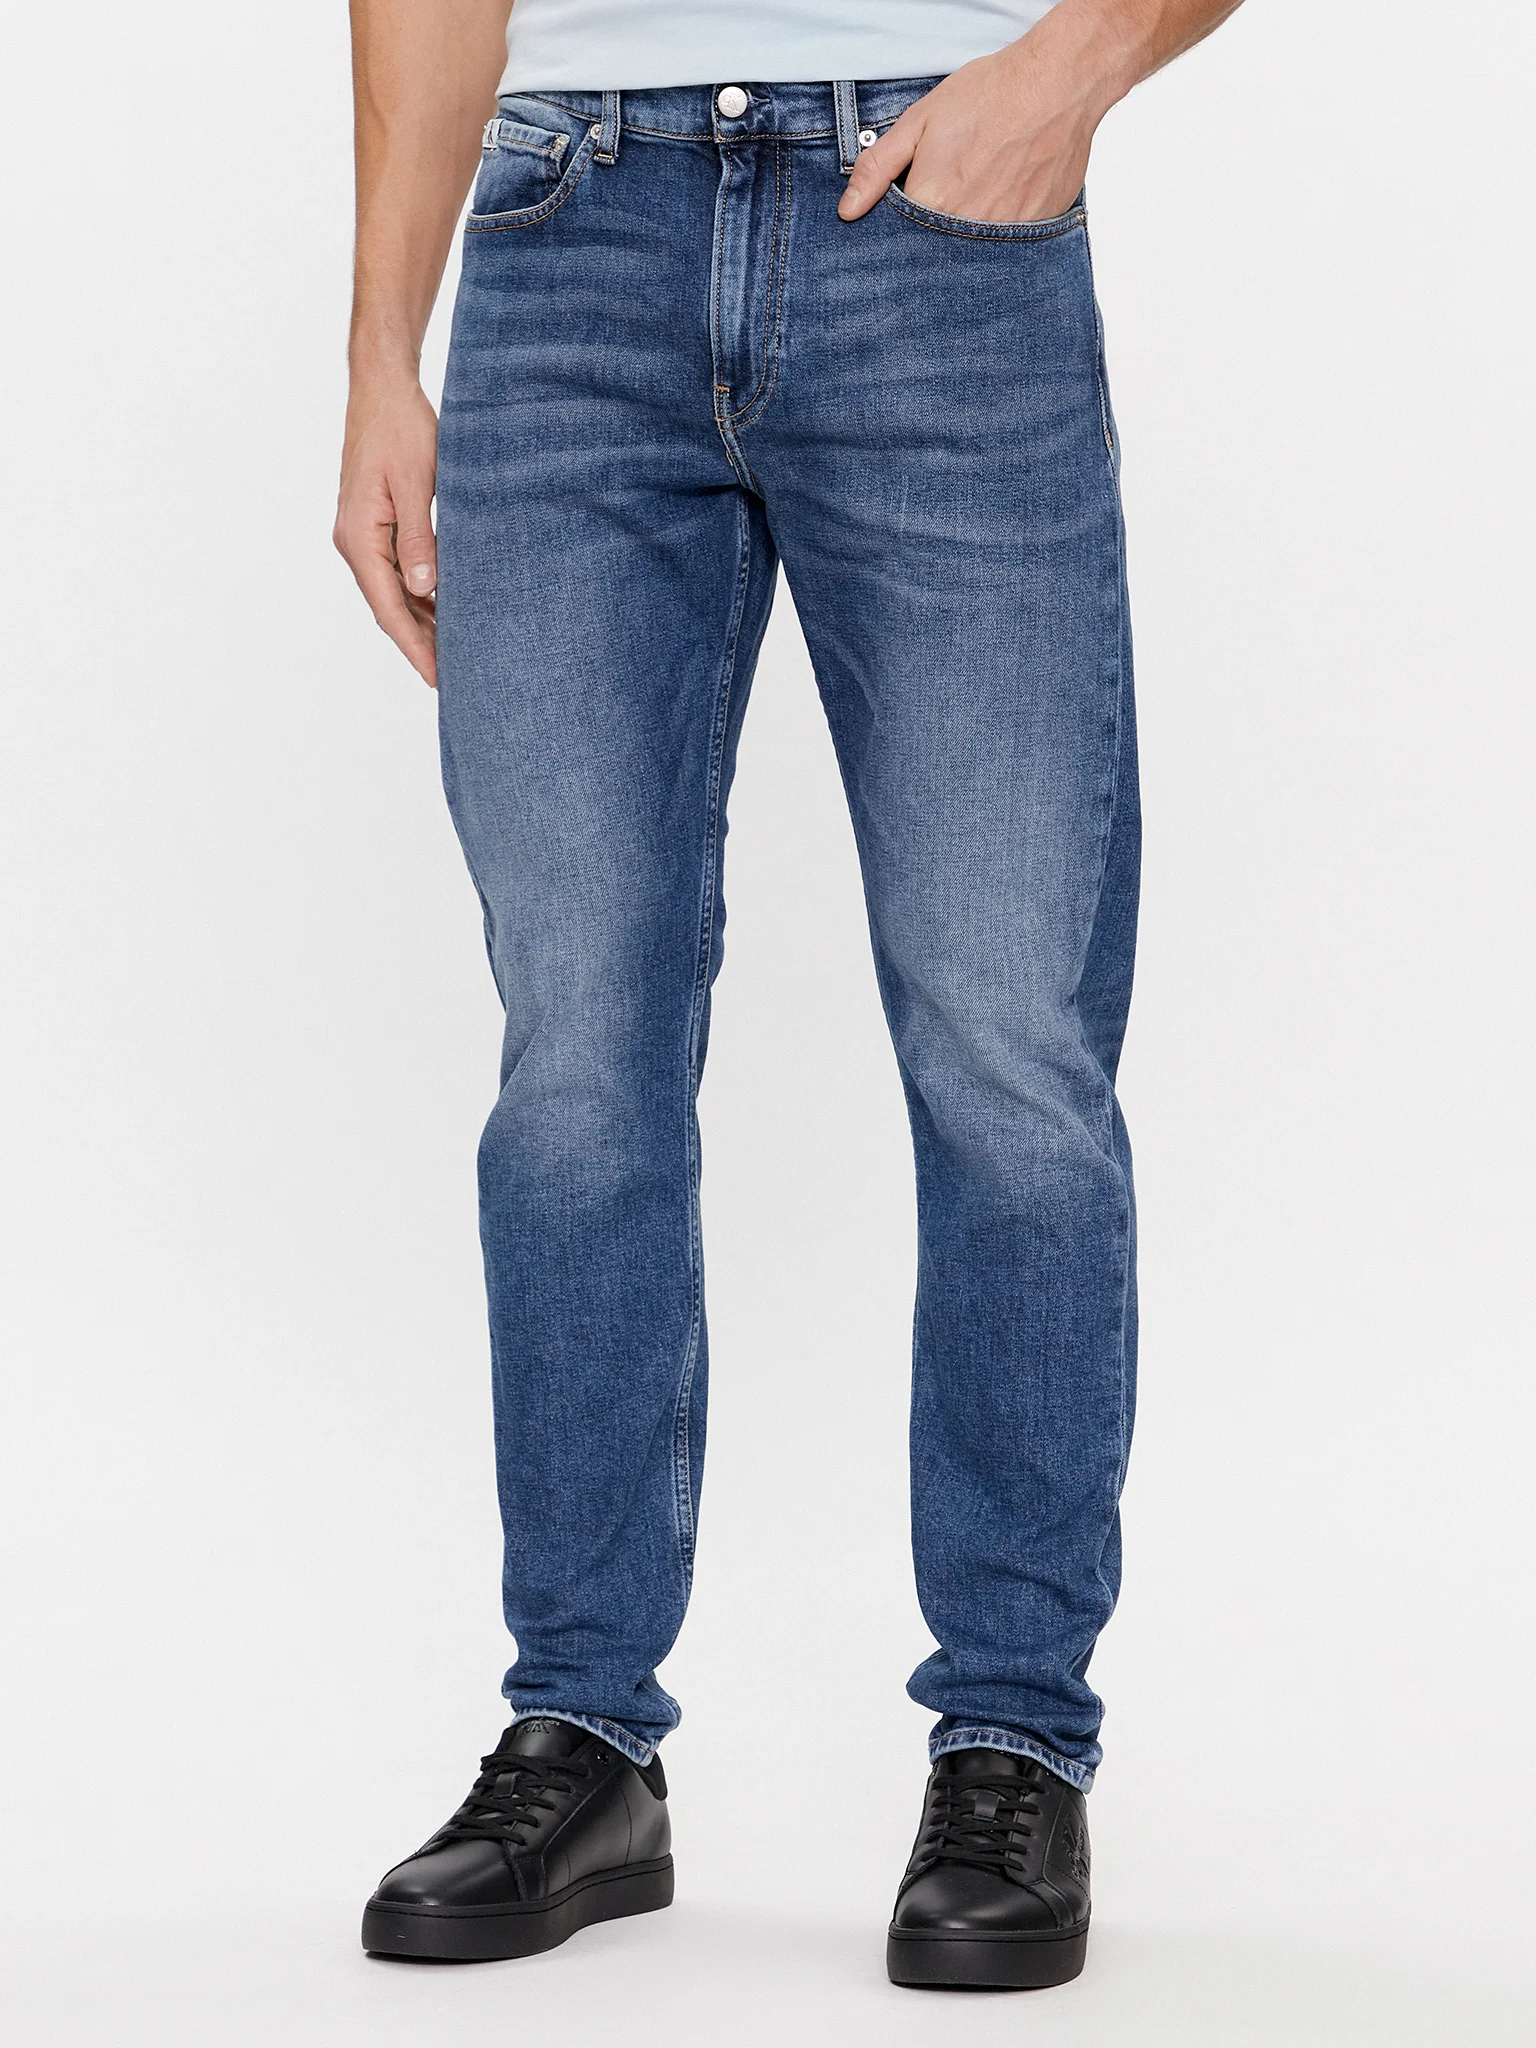 calvin-klein-jeans-jeans-j30j324193-blu-slim-taper-fit-0000303110604